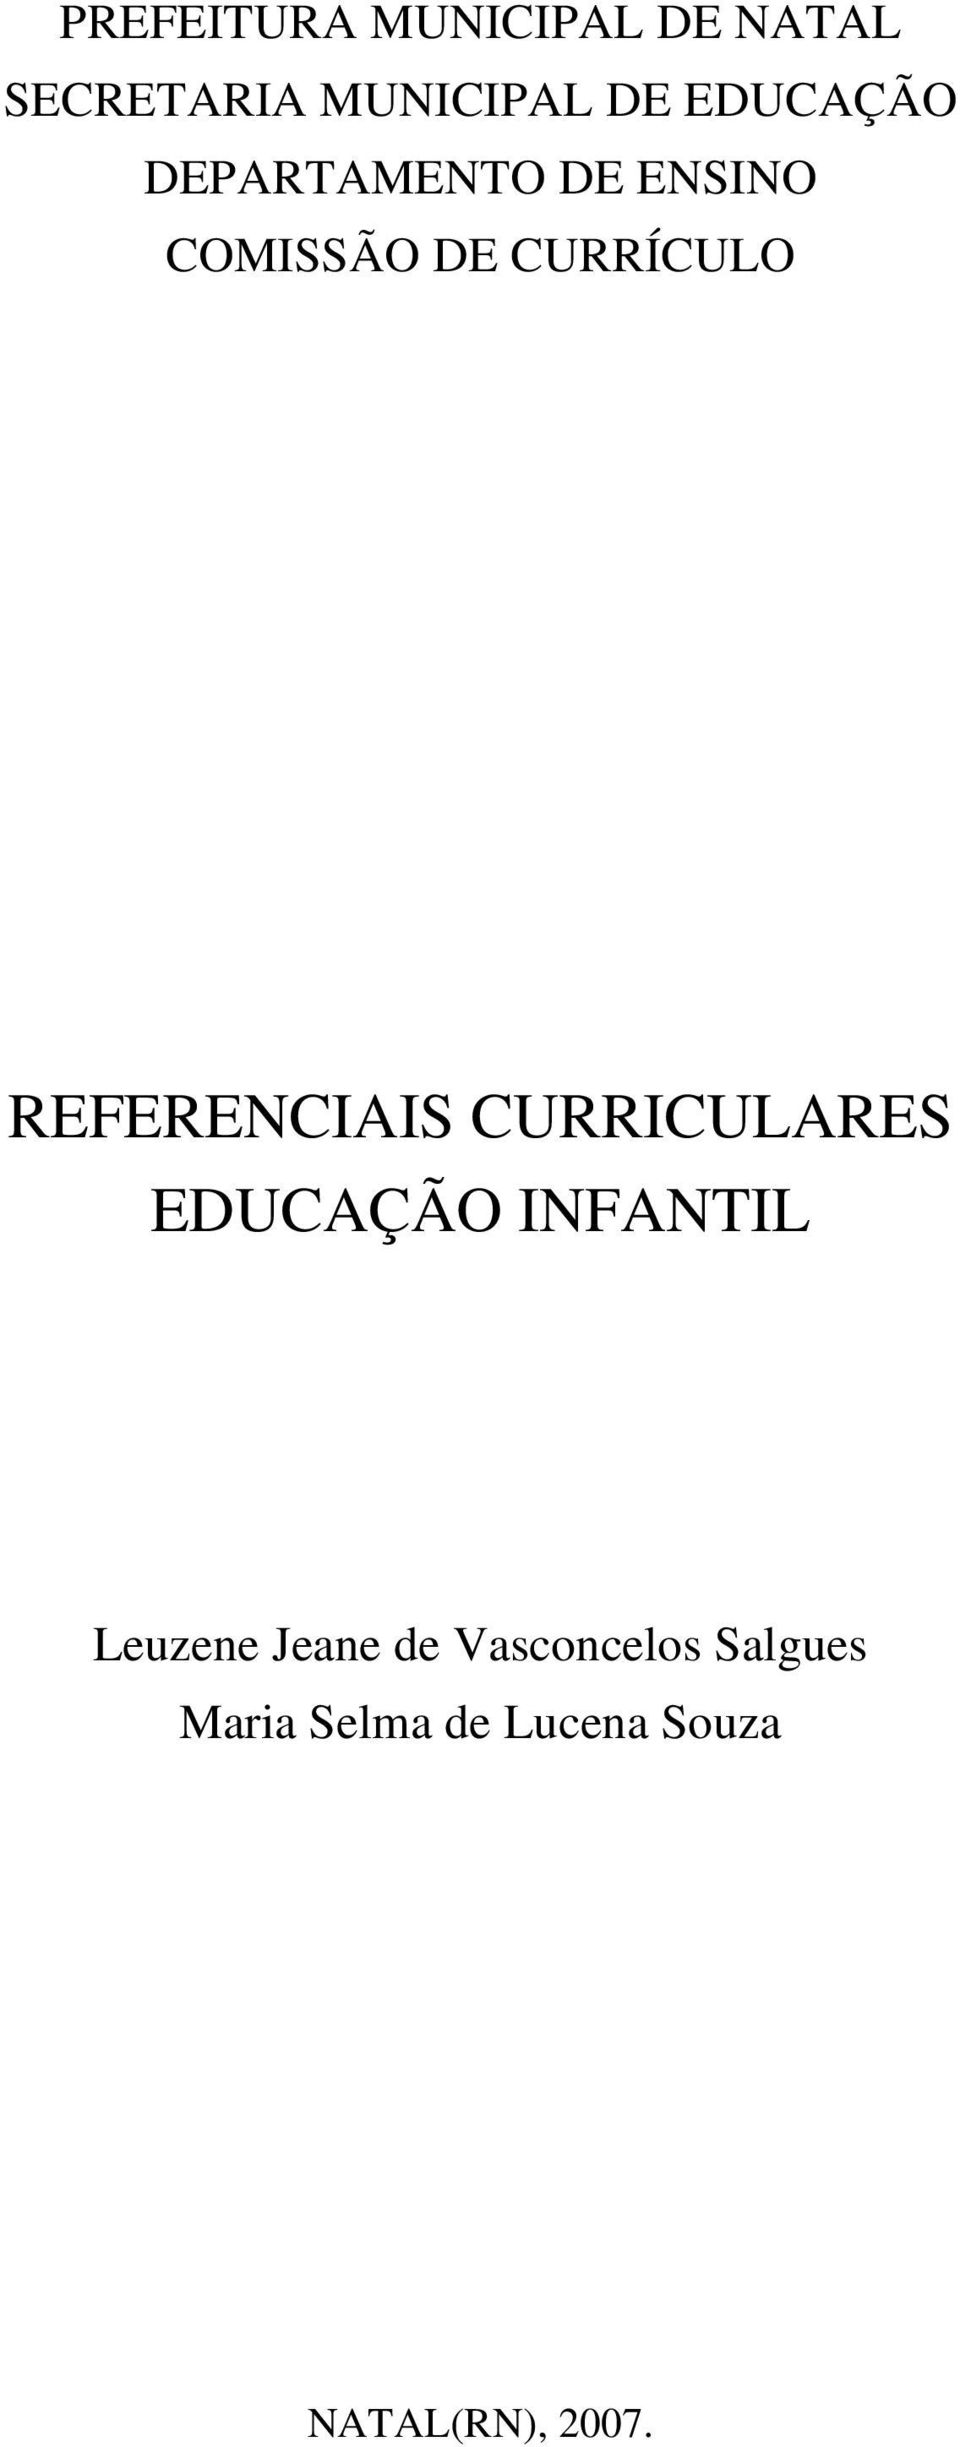 REFERENCIAIS CURRICULARES EDUCAÇÃO INFANTIL Leuzene Jeane